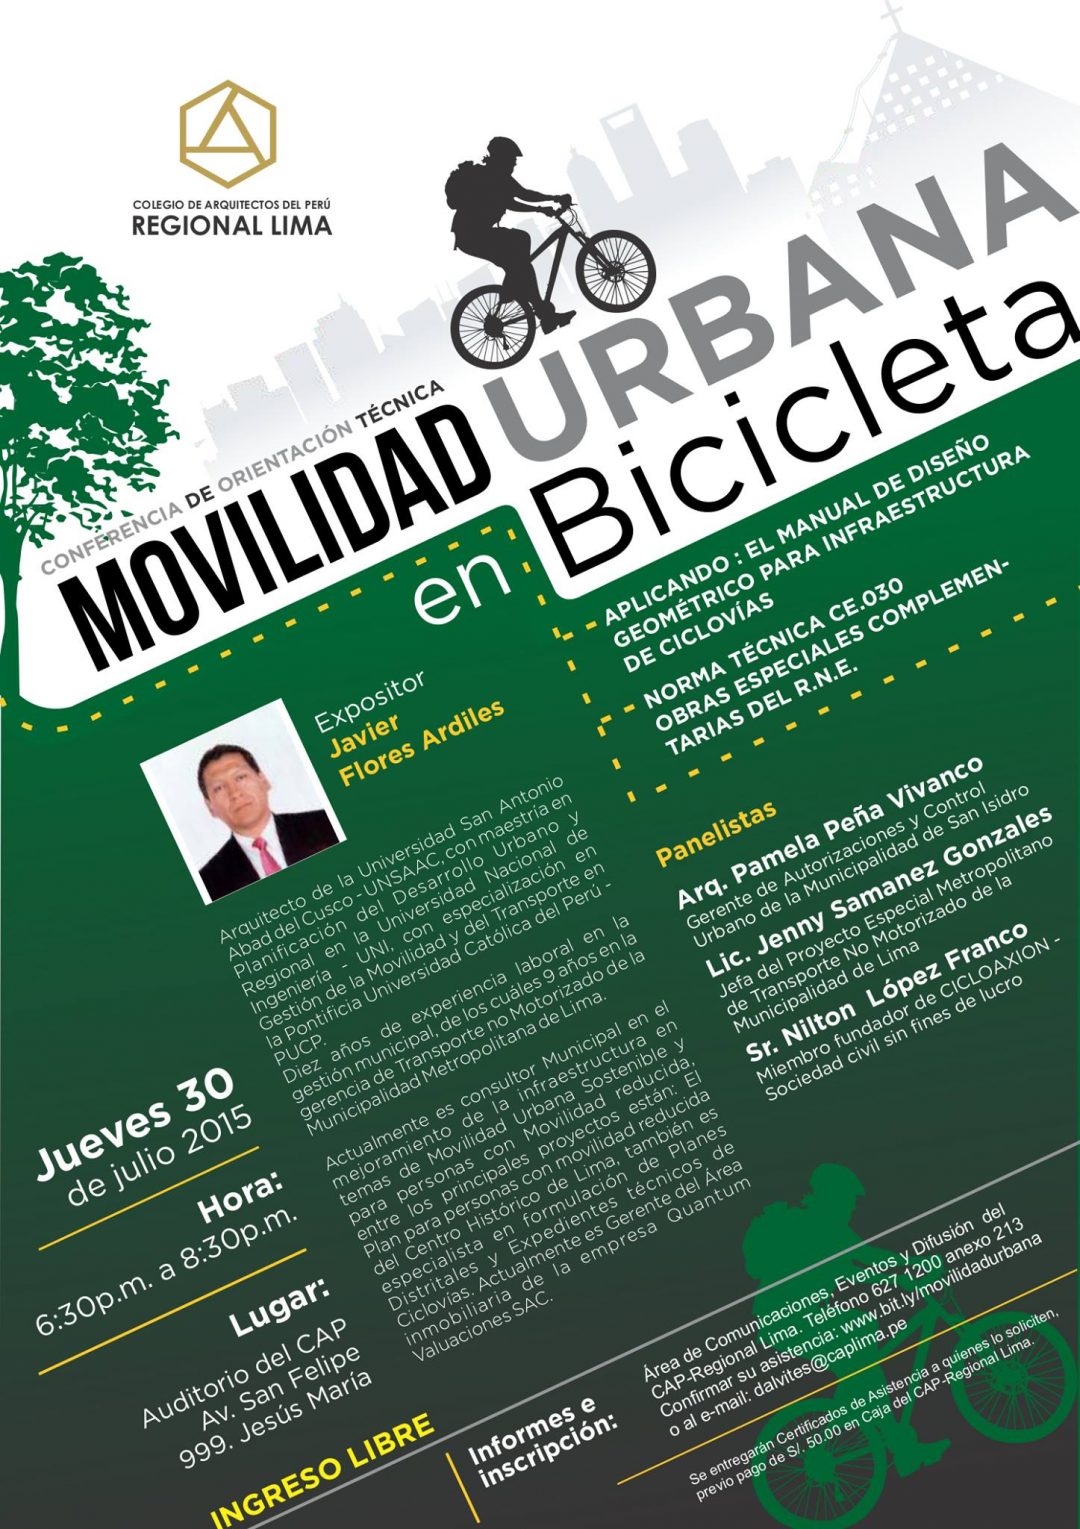 Movilidad urbana en bicicleta